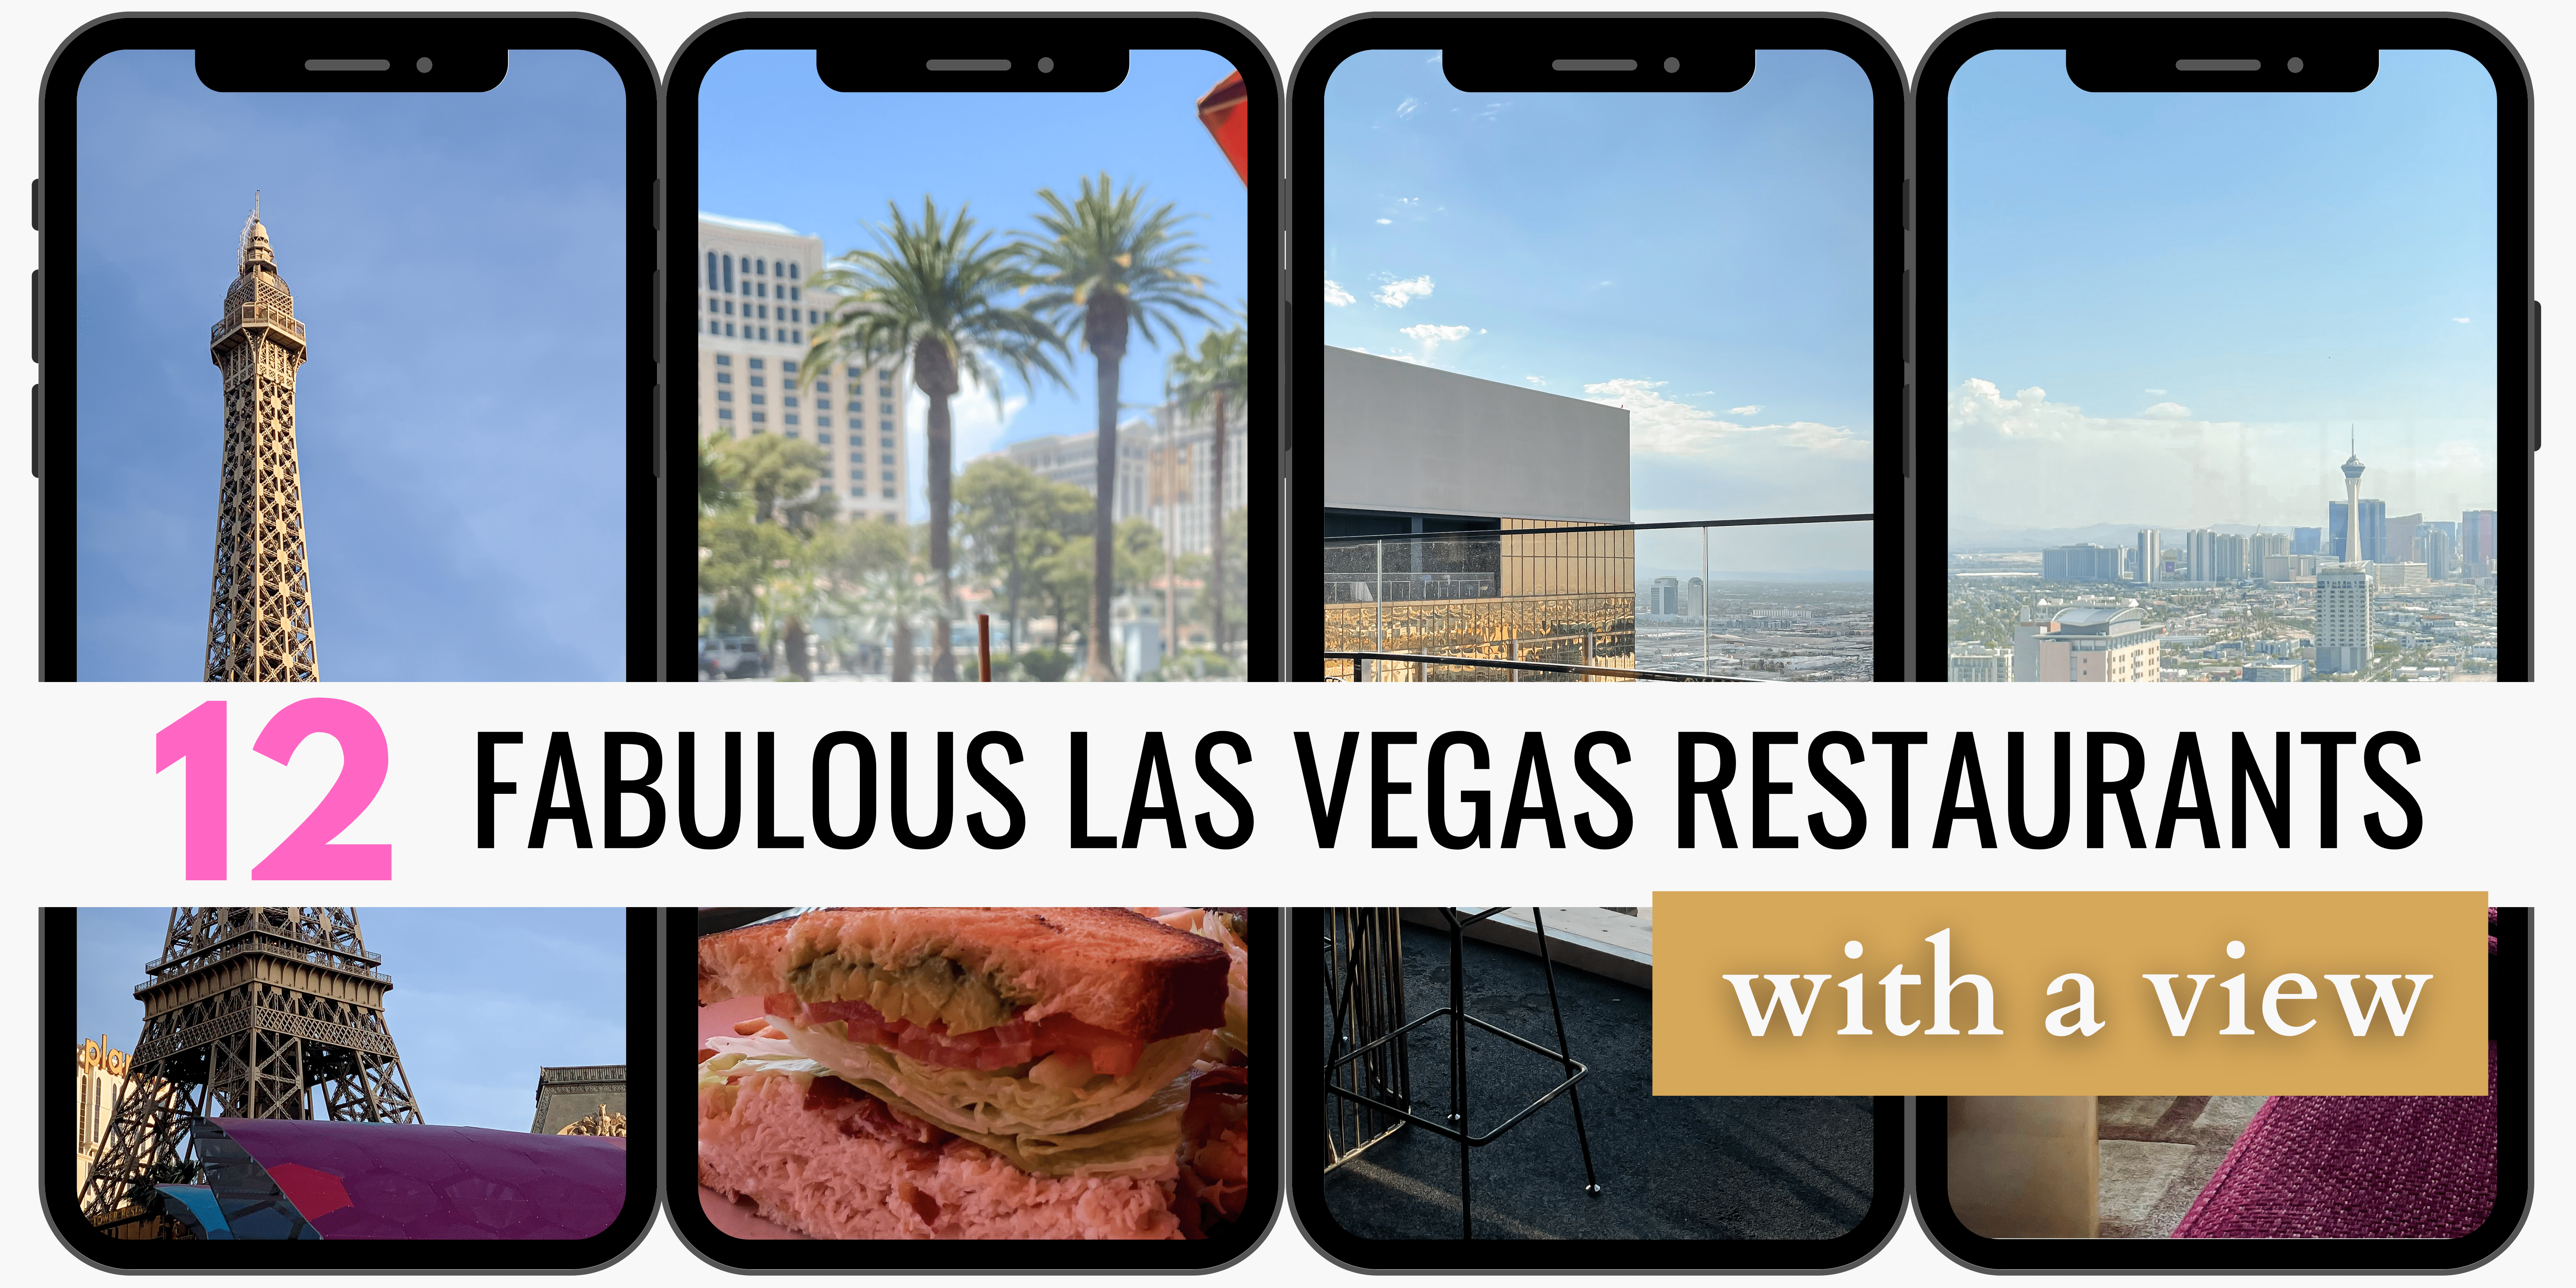 12 Fabulous Las Vegas Restaurants with a View